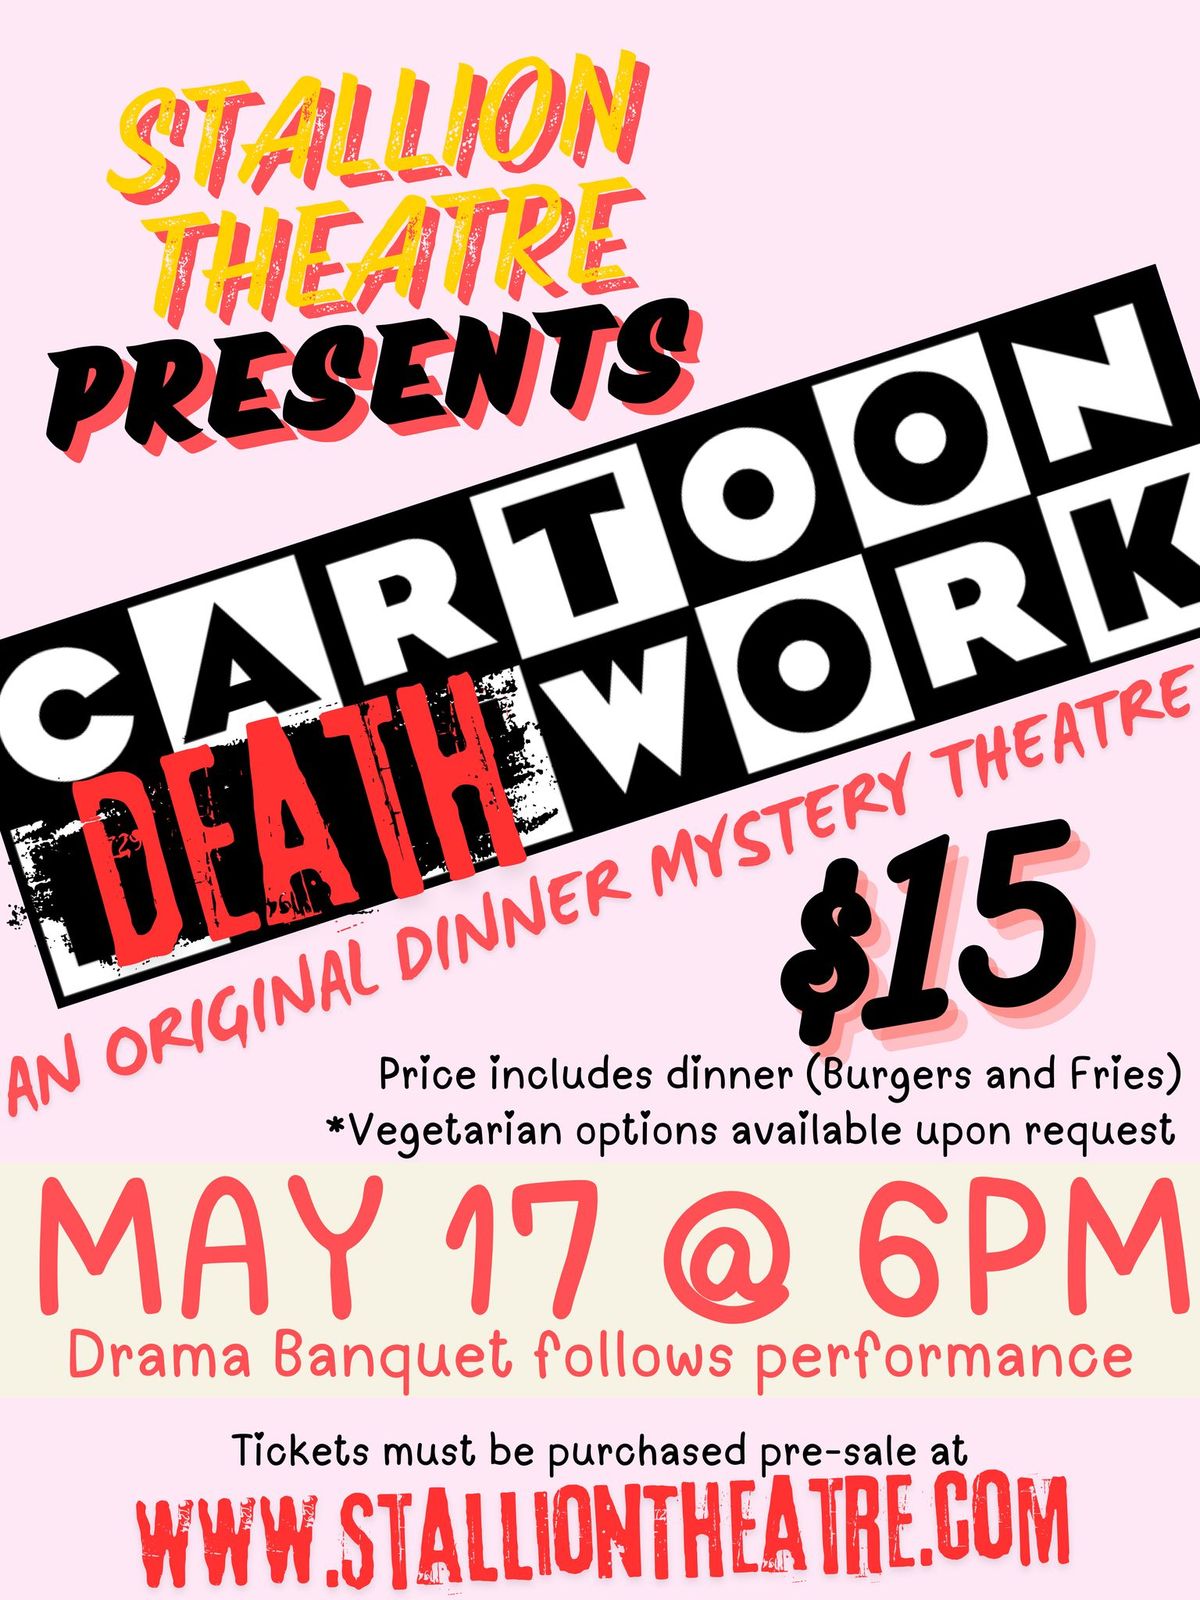 Cartoon DEATHwork, a Stallion Theatre Original Dinner Mystery Theatre